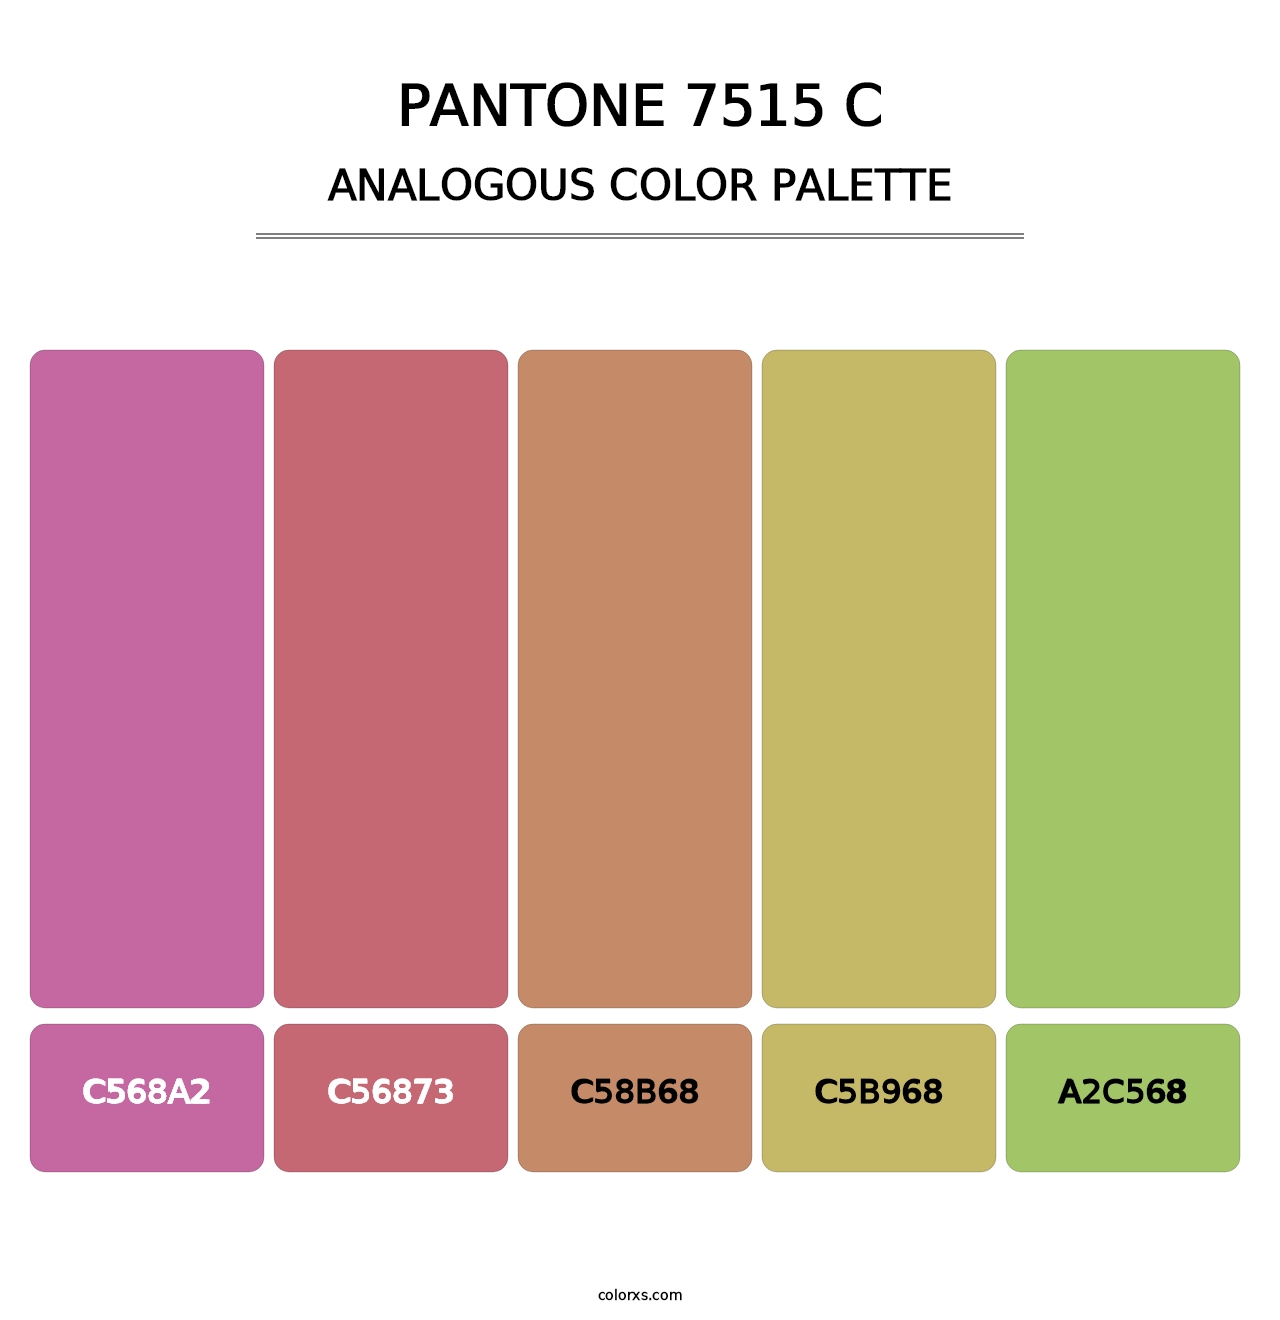 PANTONE 7515 C - Analogous Color Palette